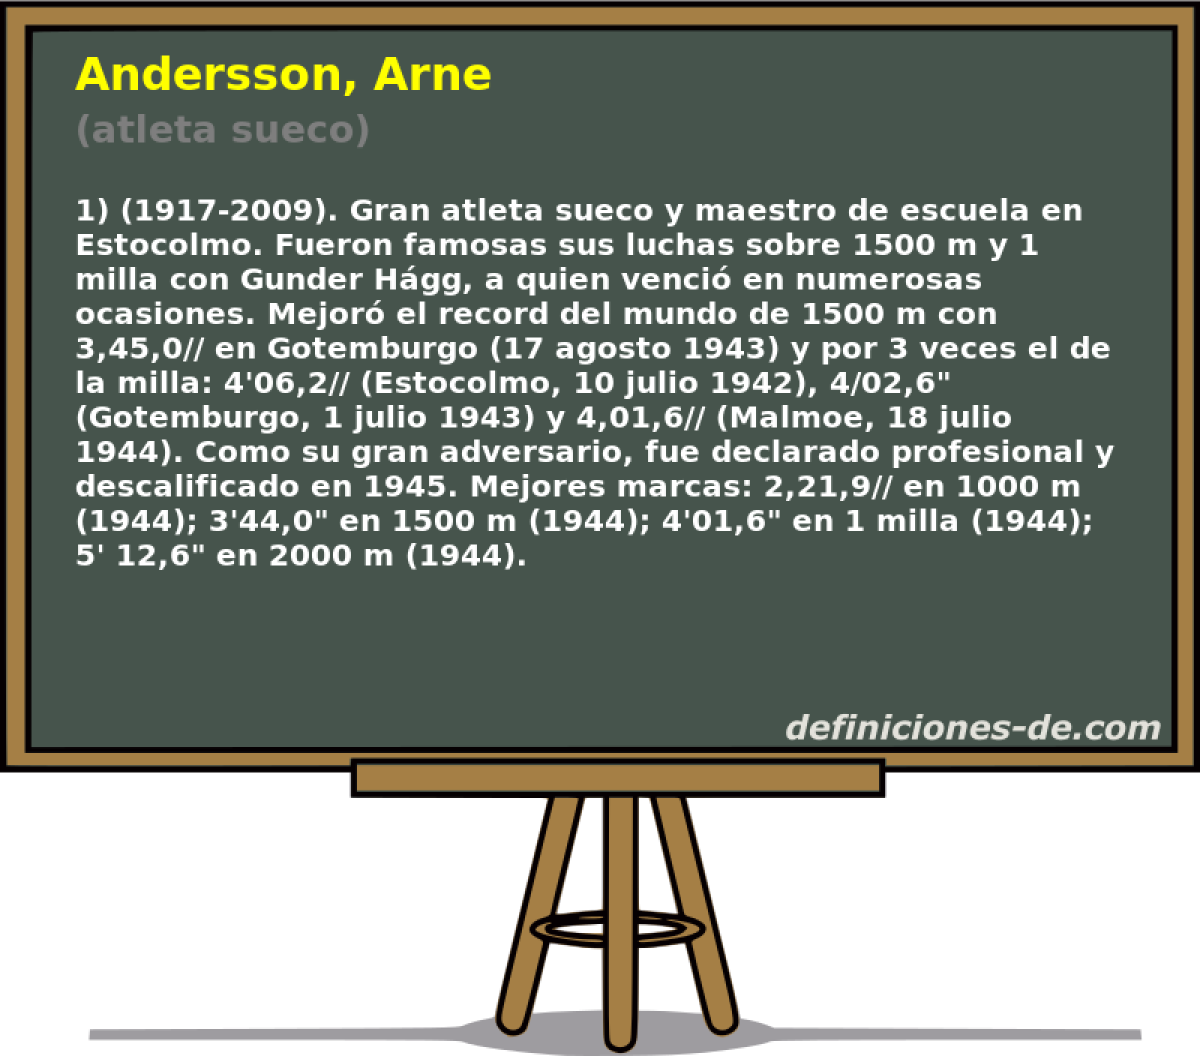 Andersson, Arne (atleta sueco)